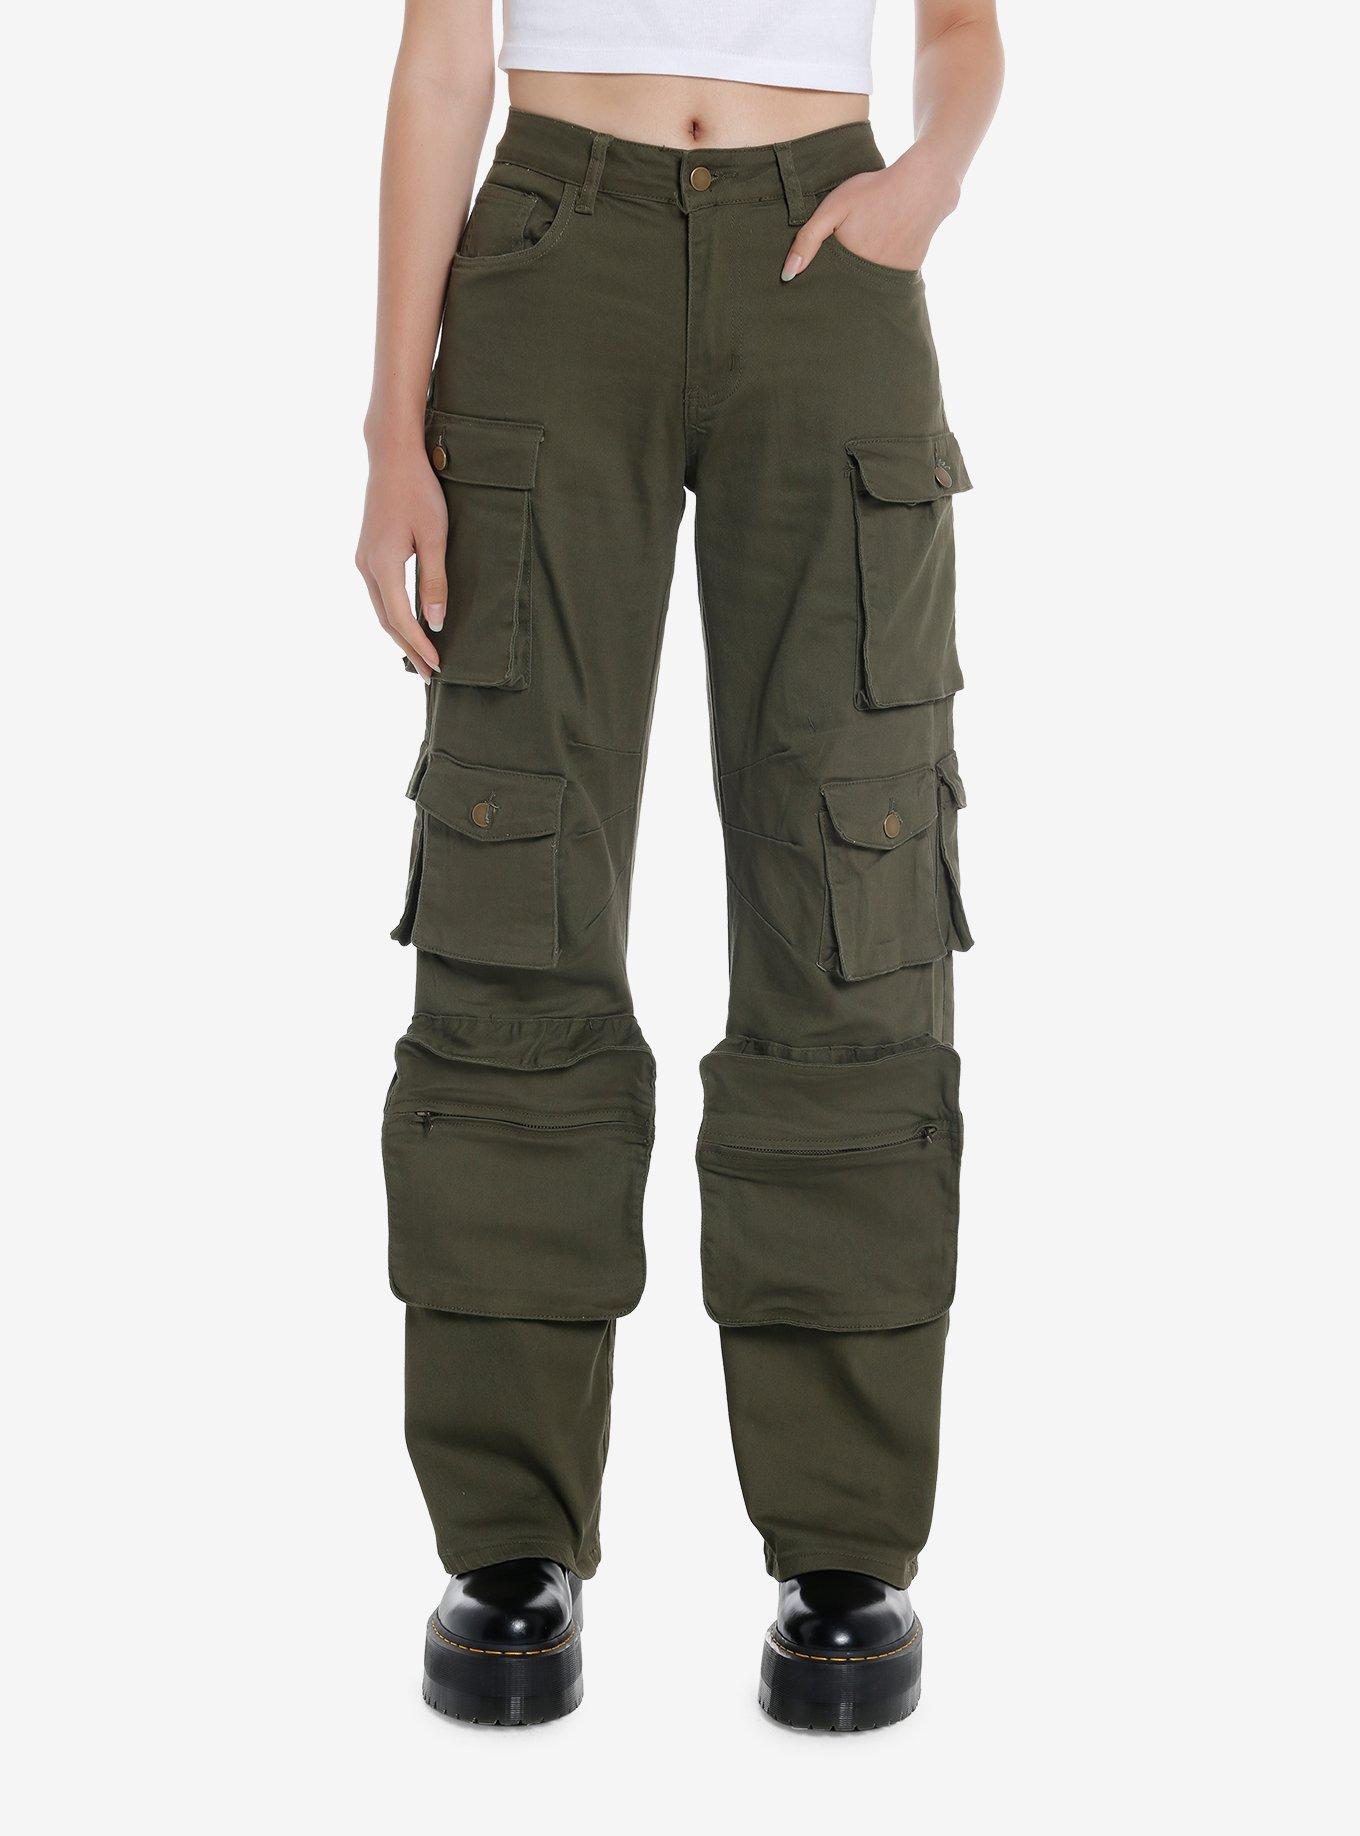 Olive Green Multi-Pocket Girls Cargo Pants, GREEN, hi-res